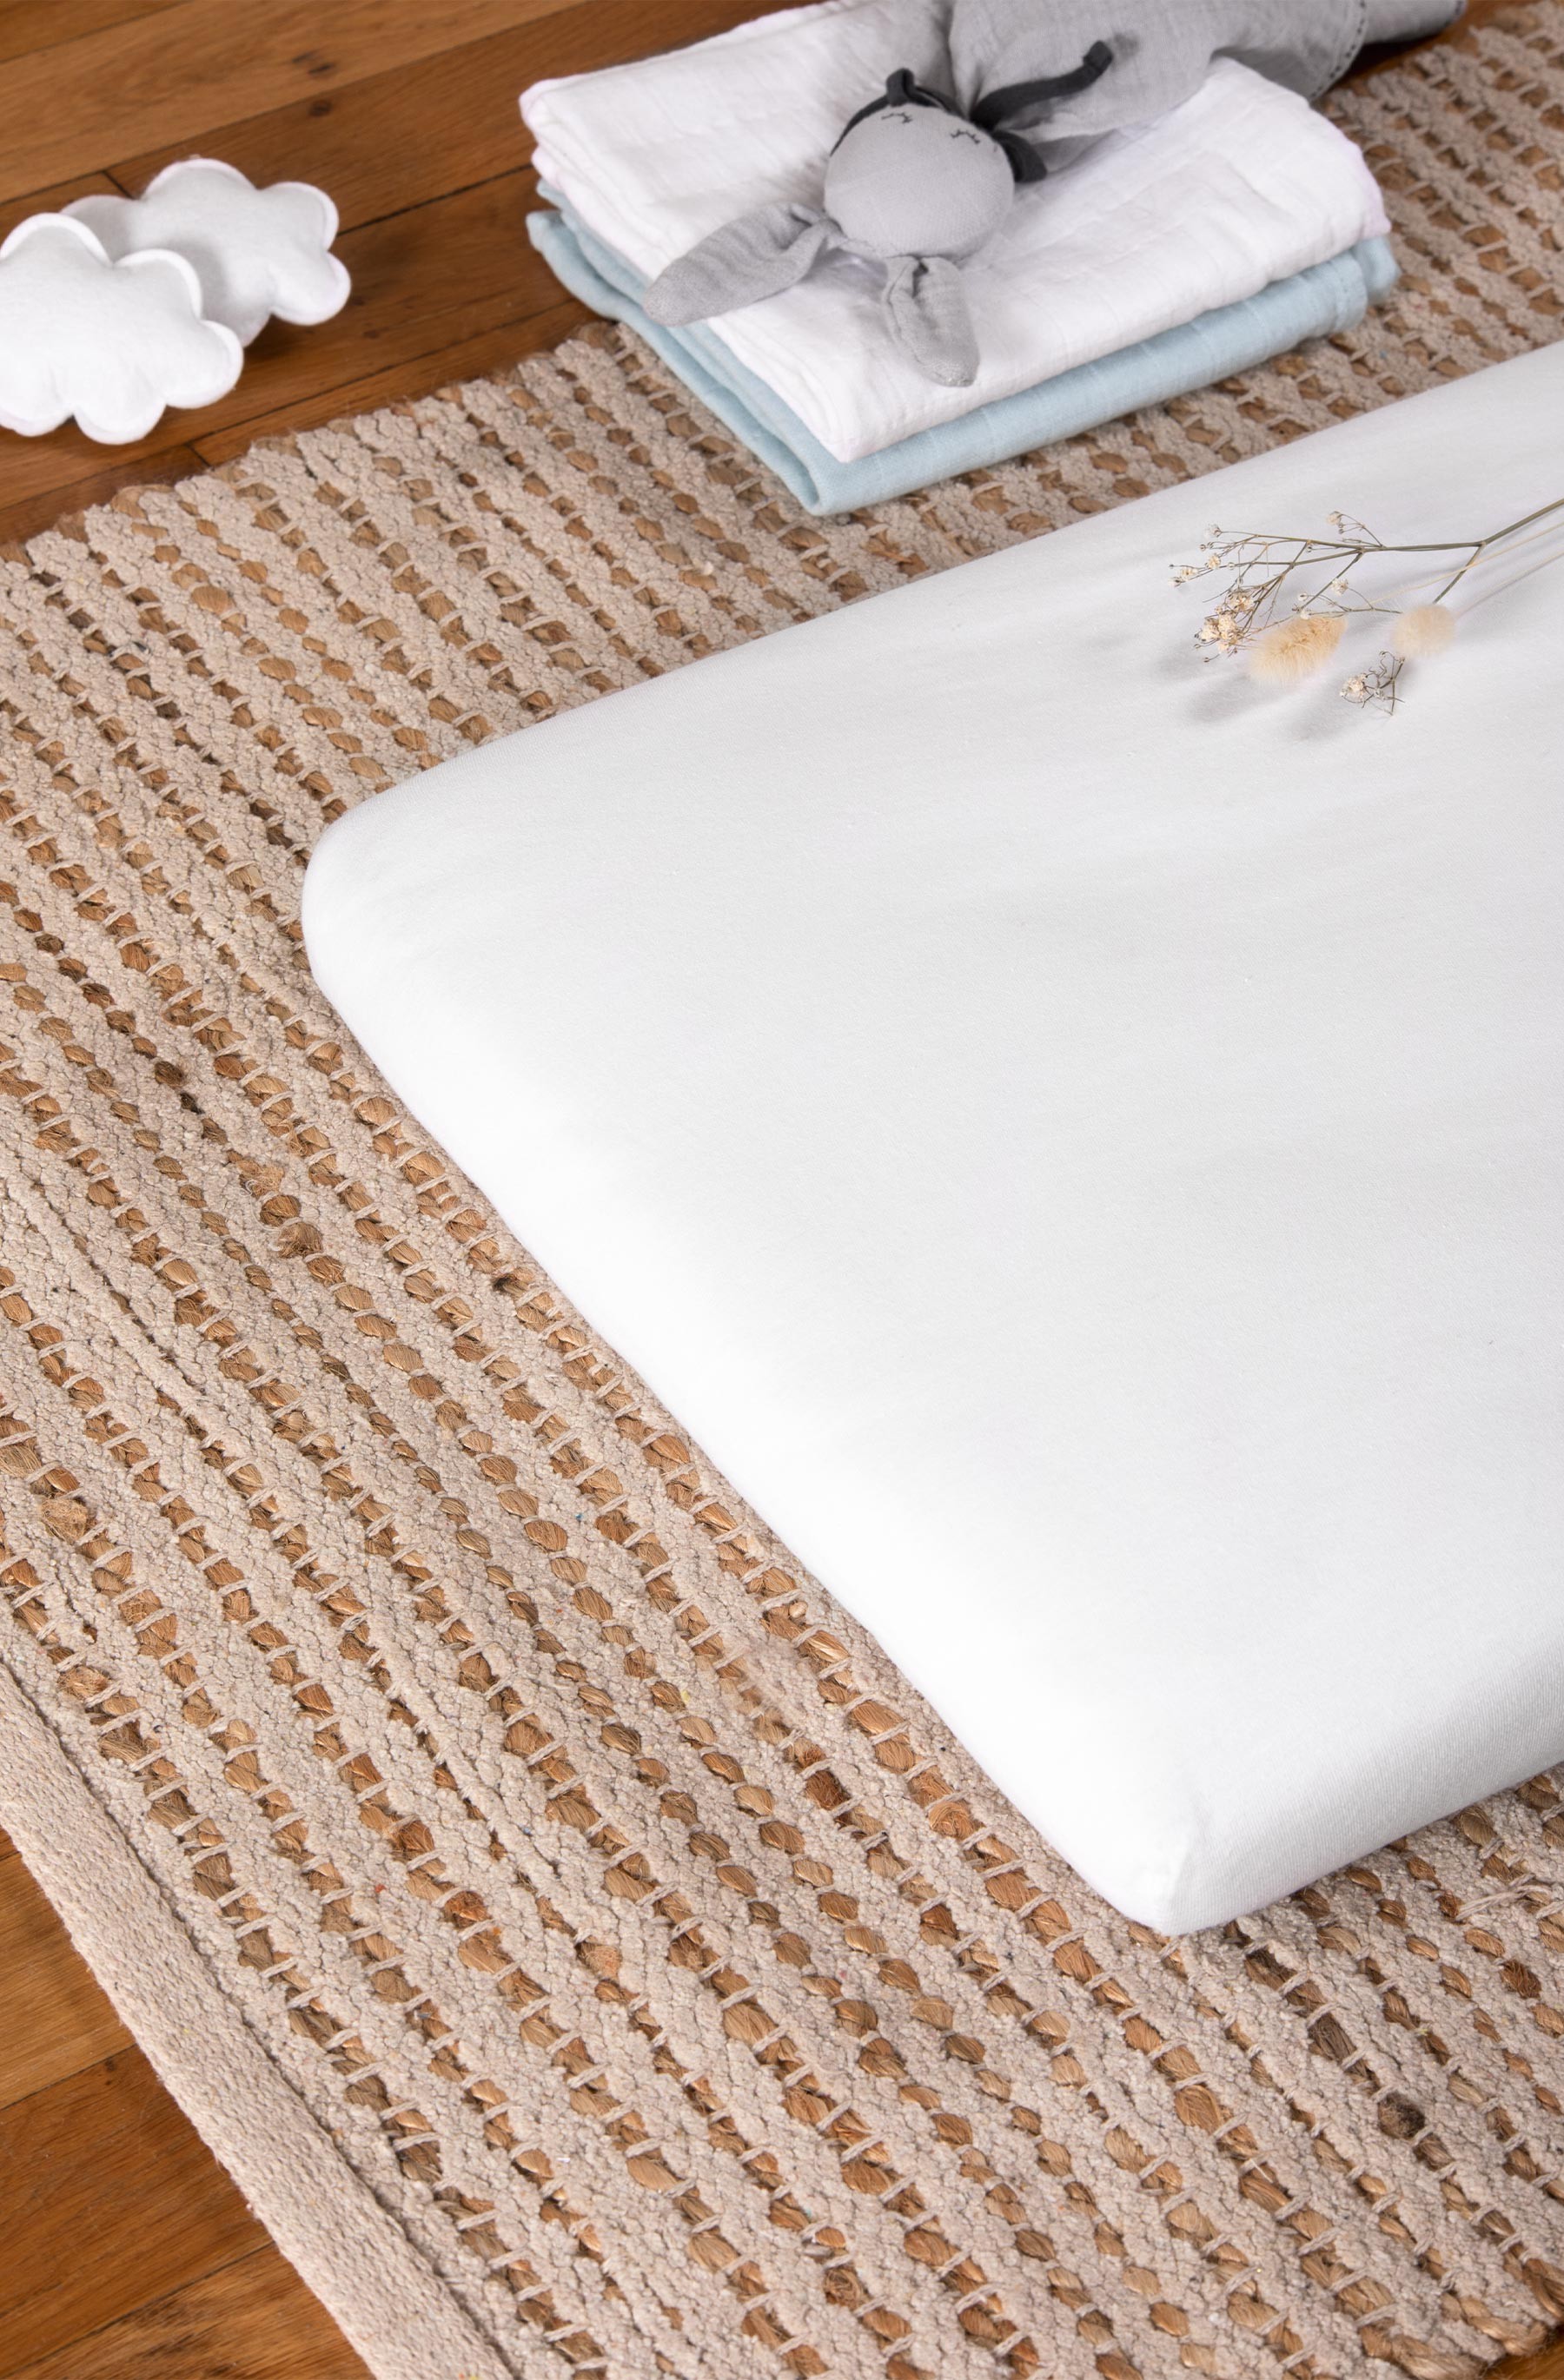 Drap-Housse en Jersey 100% Coton pour Matelas de Berceau de 83 x 50 cm  (Blanc)